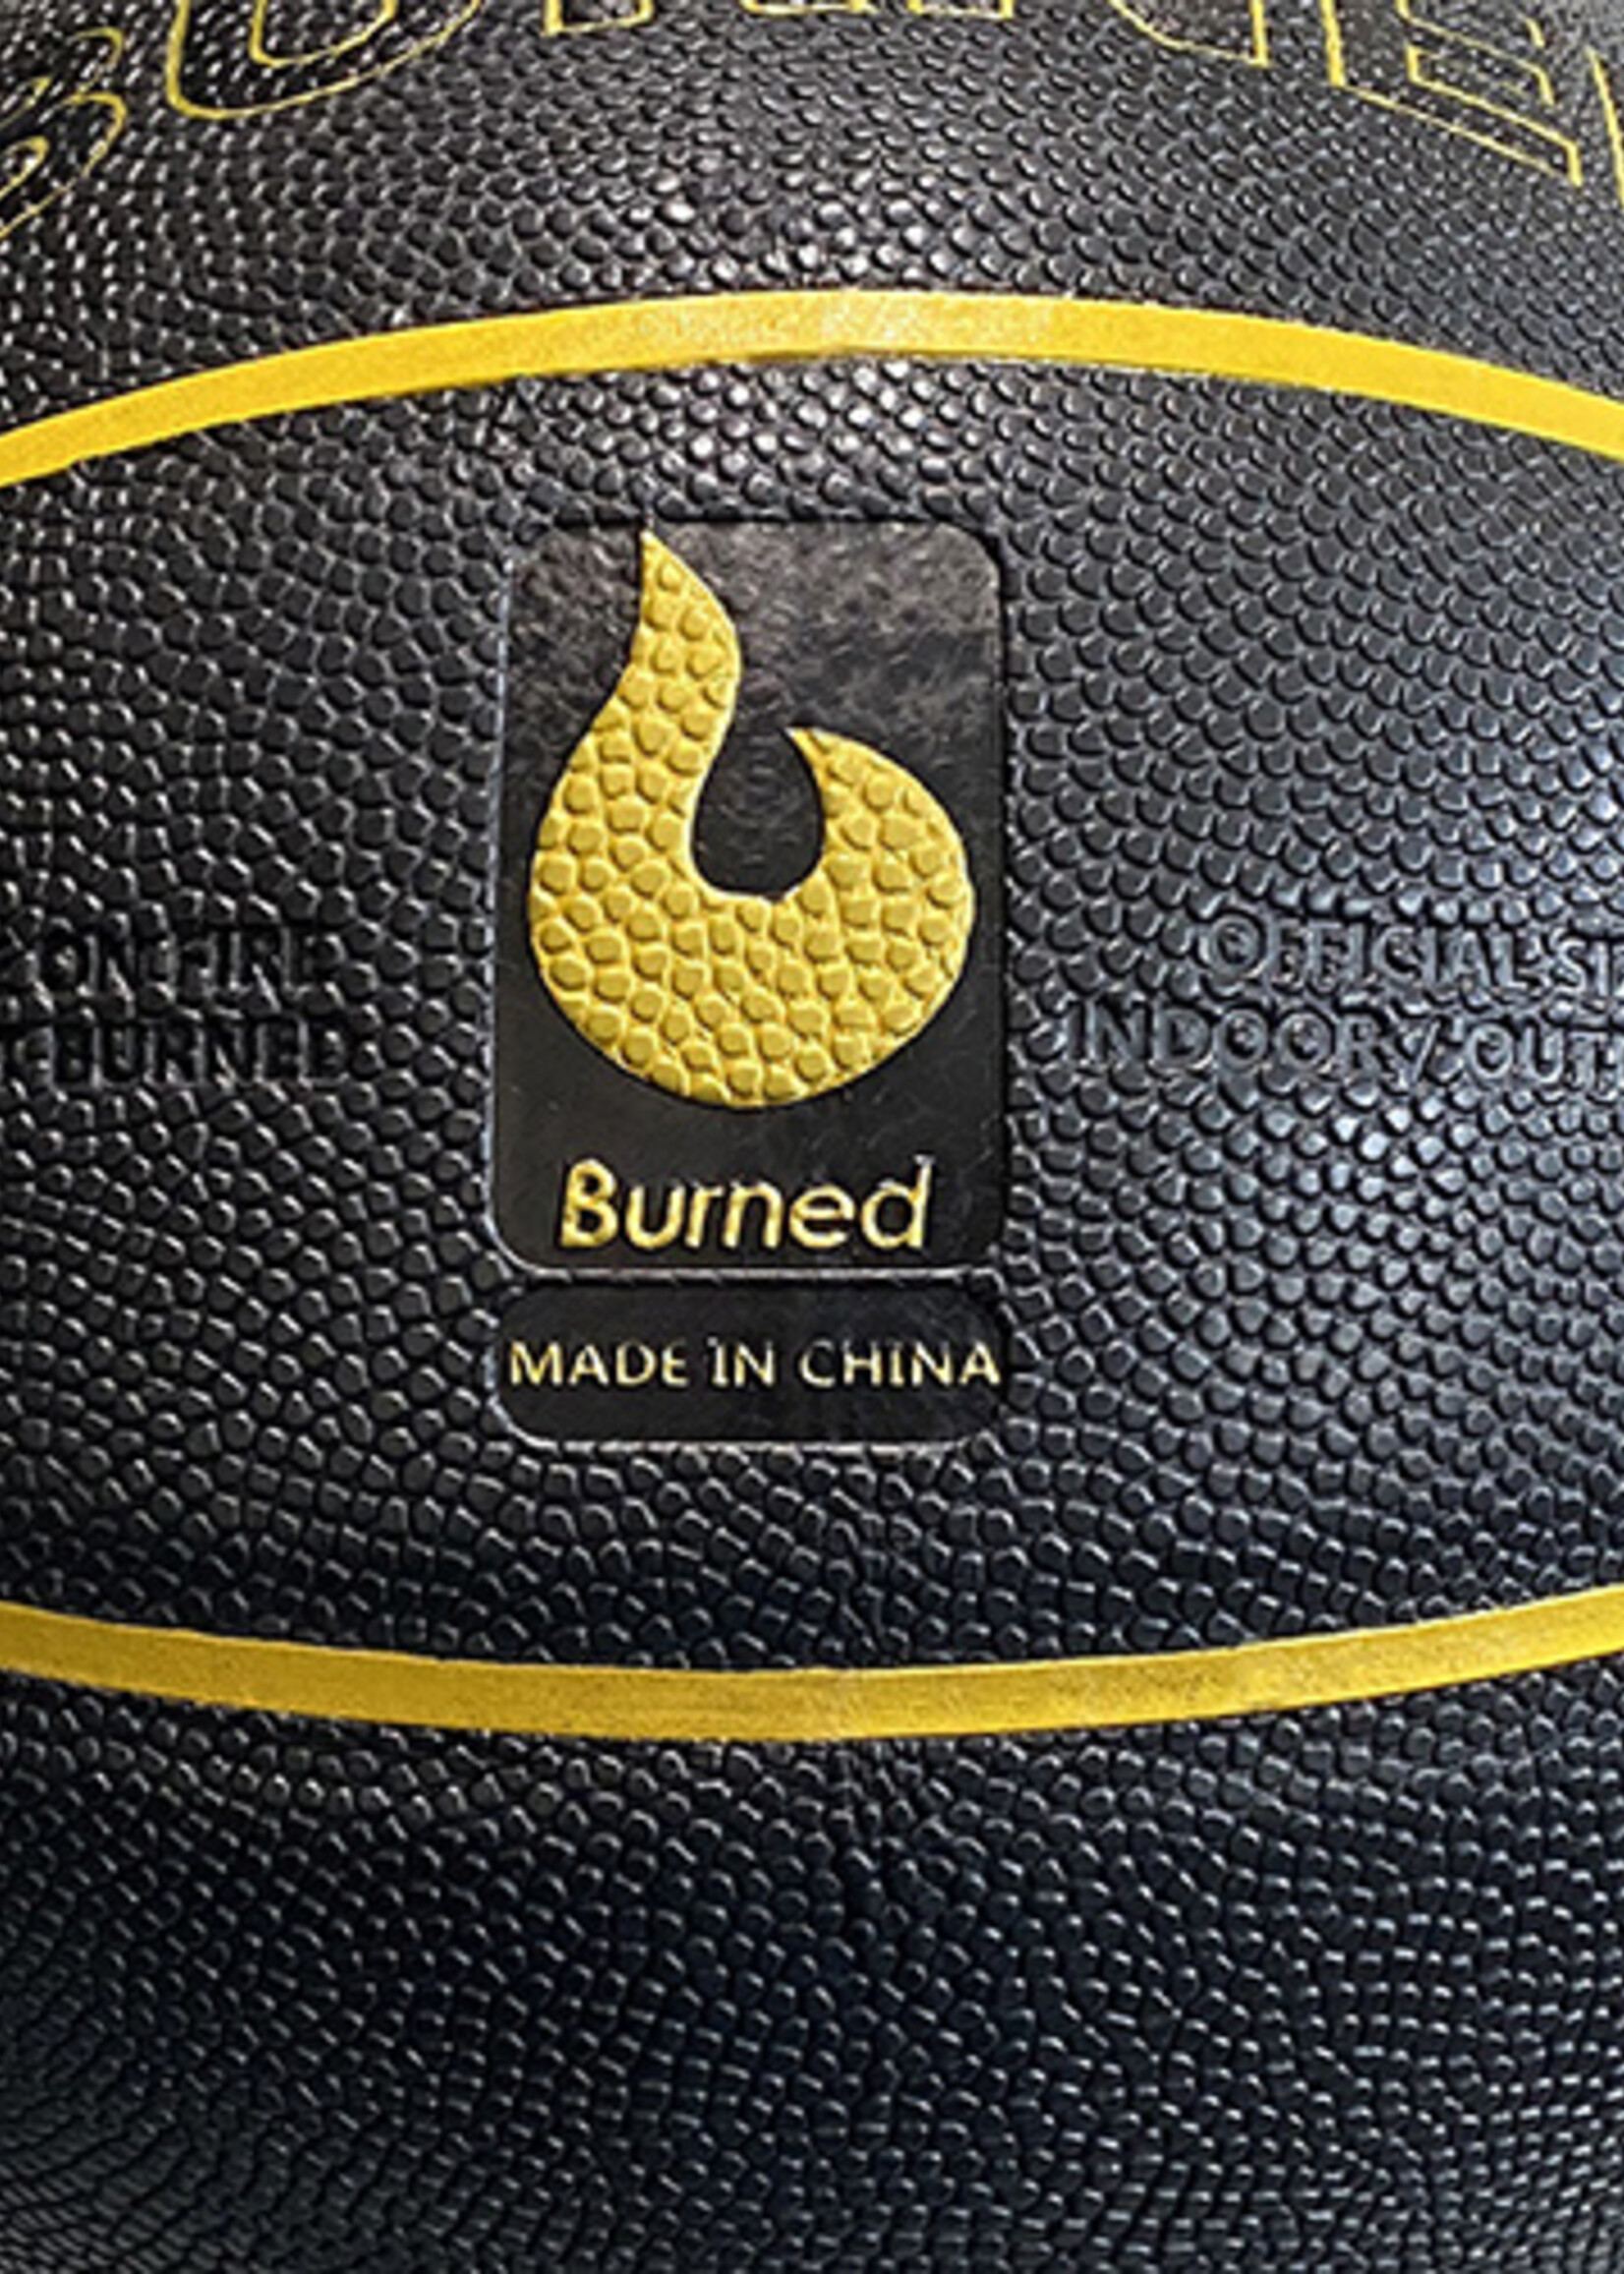 Burned Burned In/Out Basketball Schwarz Gold (7)